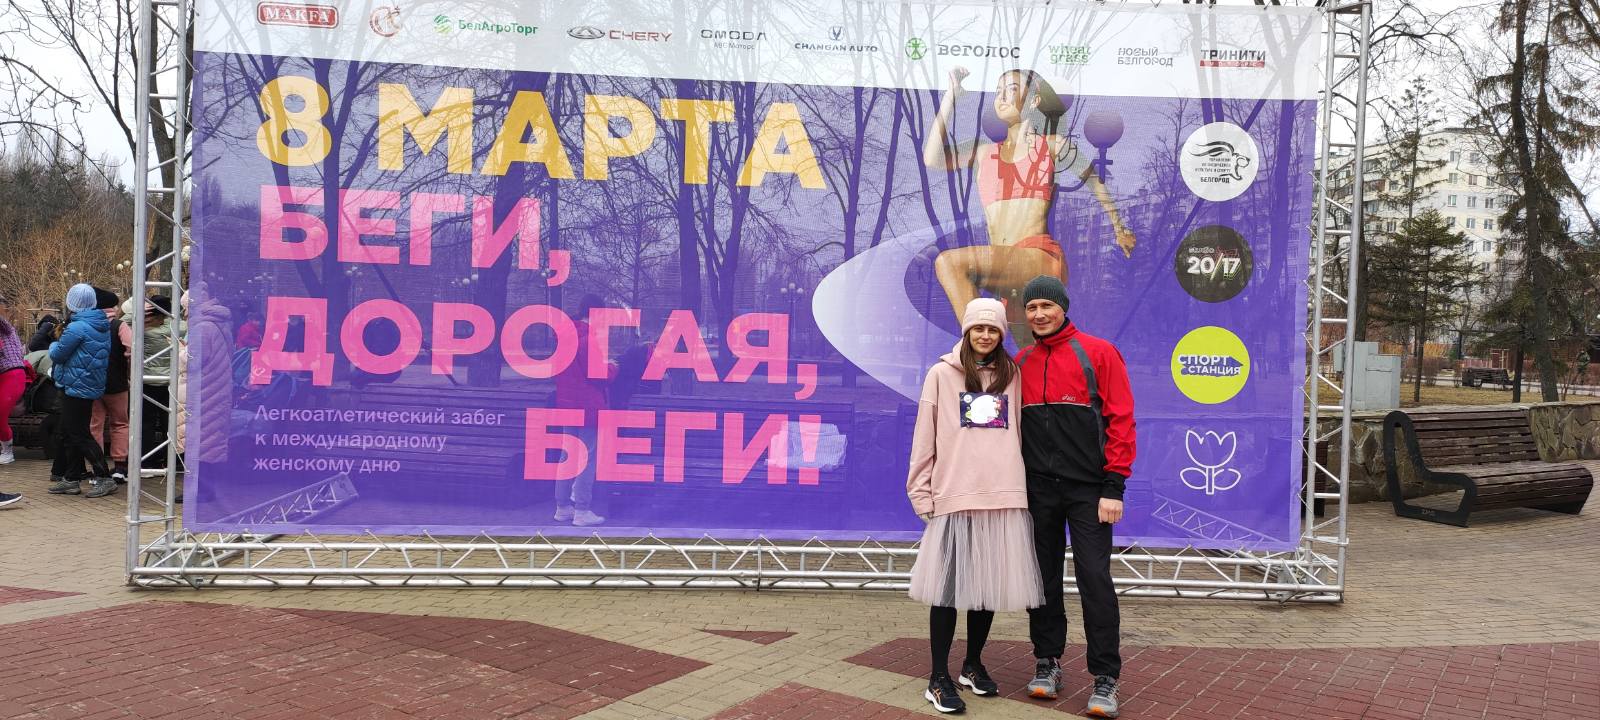 Забег "Беги, дорогая, беги!" 8 марта в Белгороде